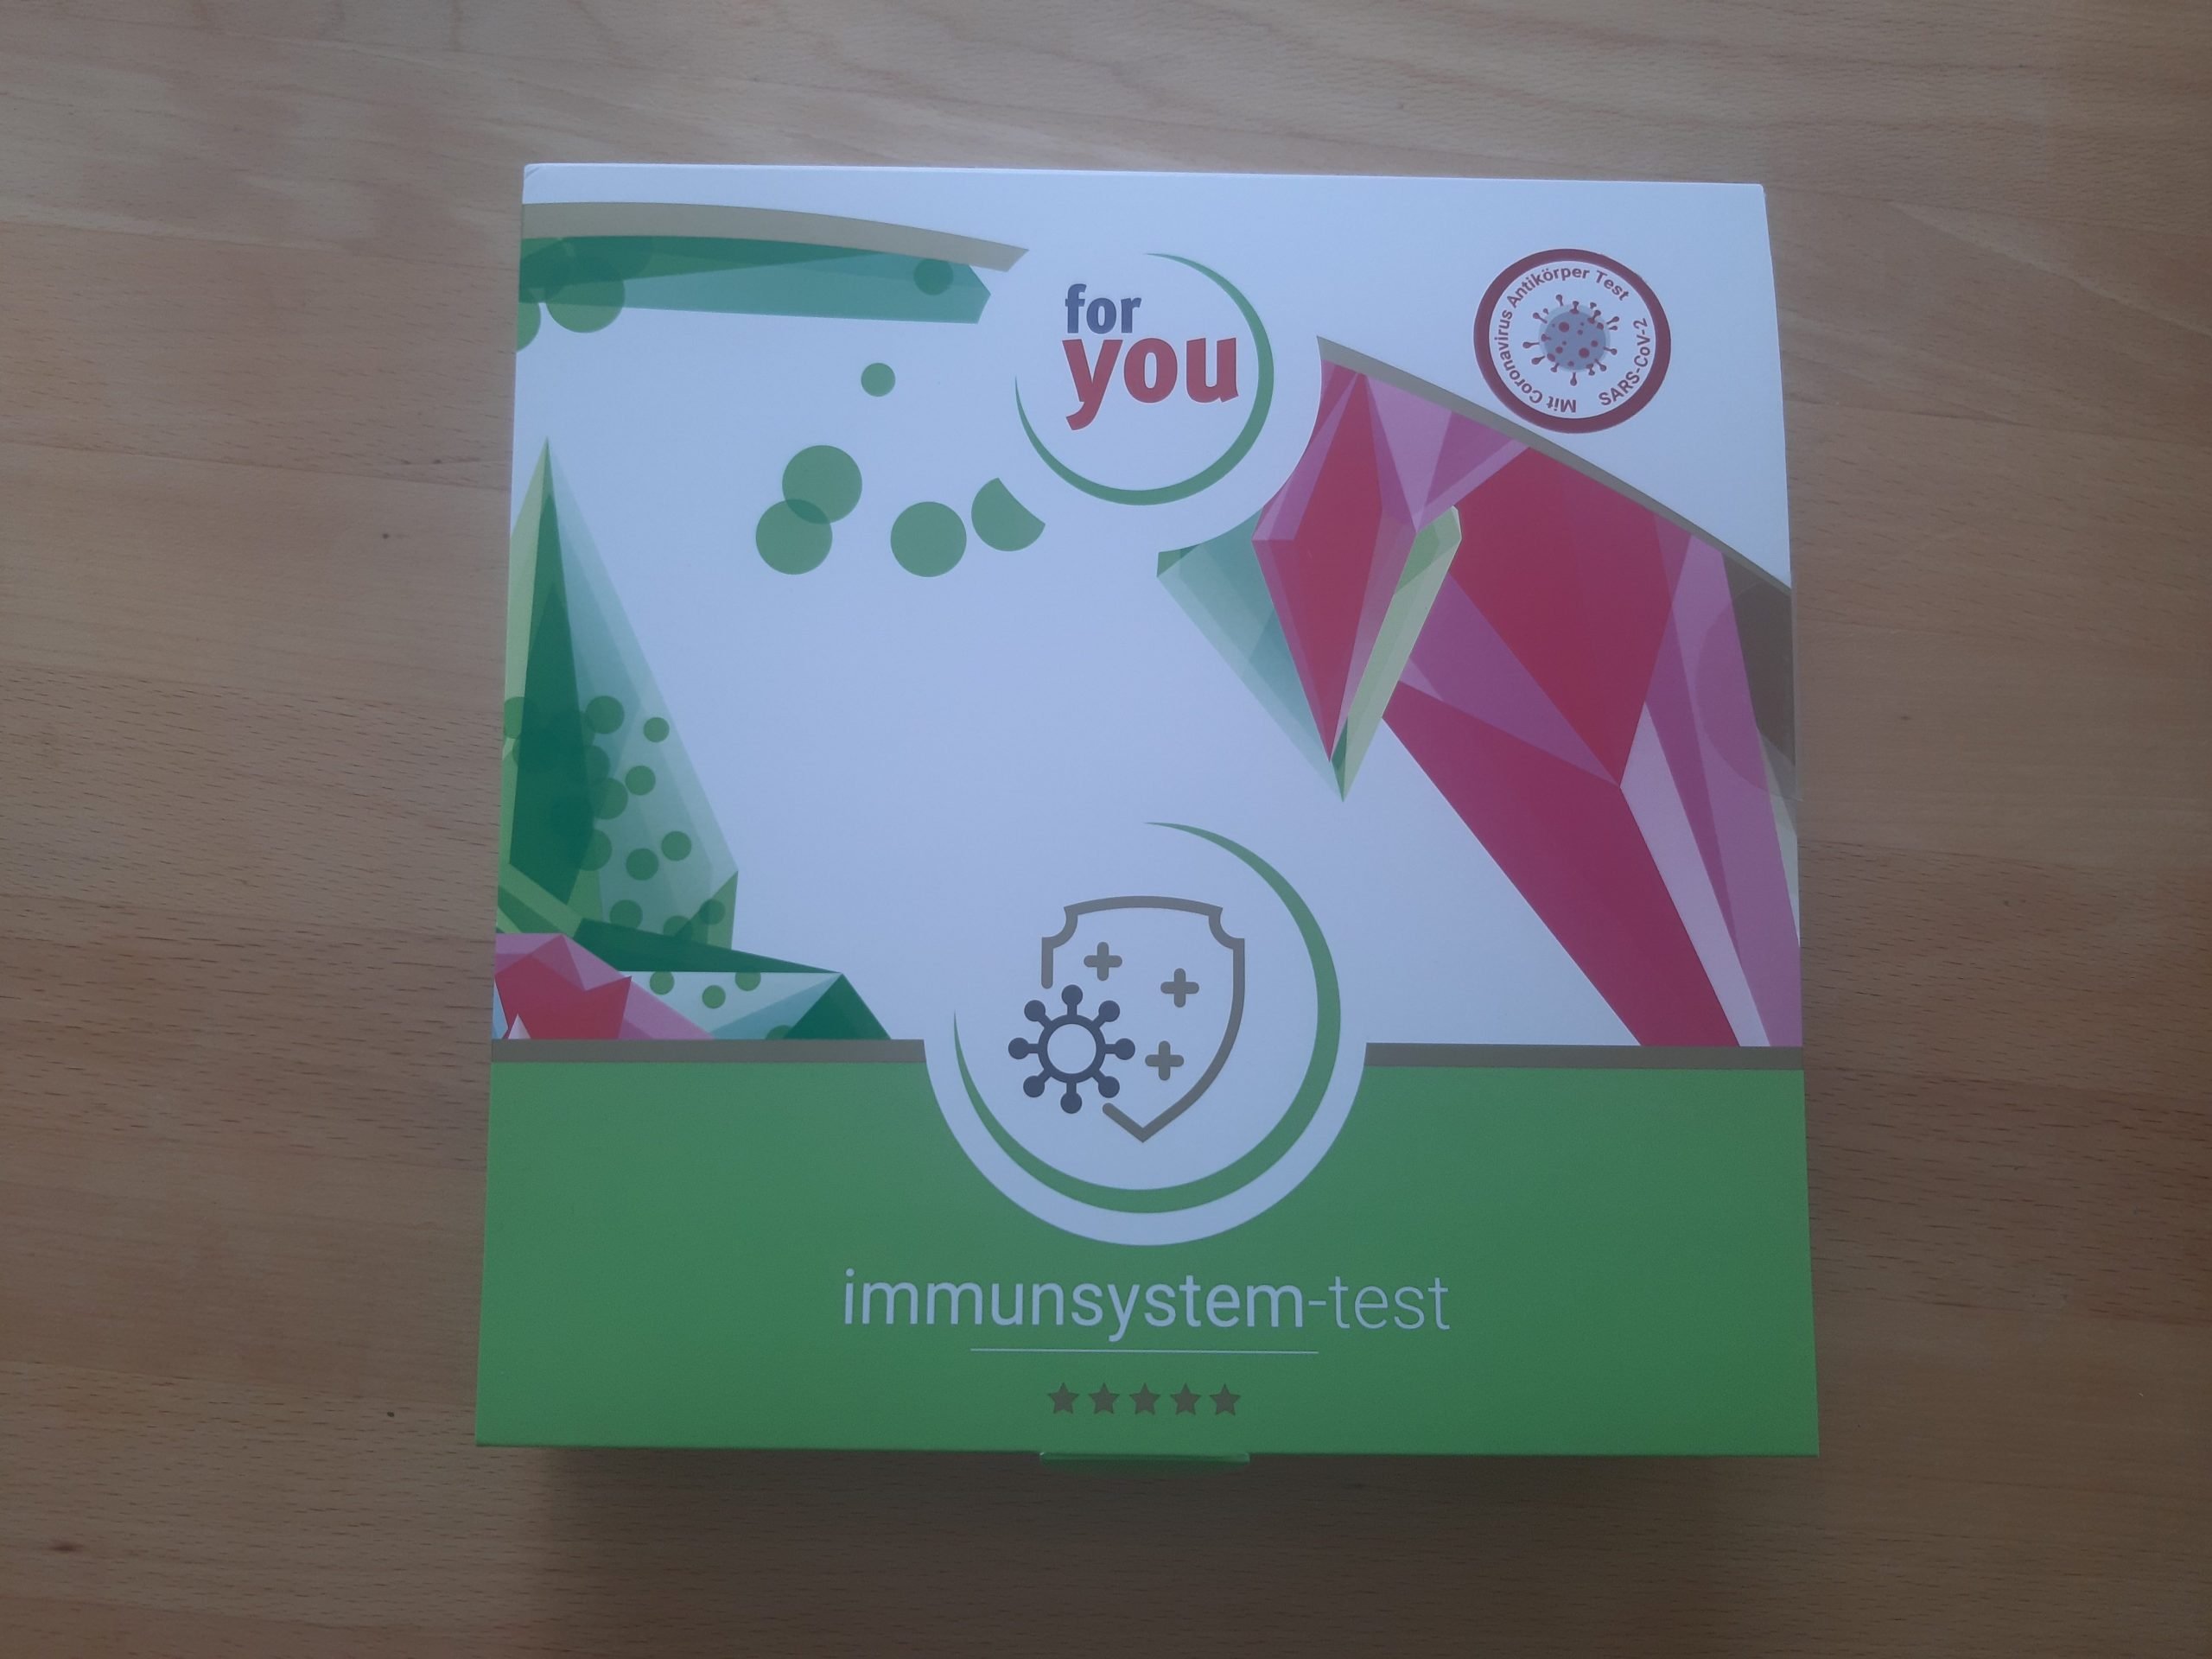 Auf diesem Foto sieht man die Verpackung des For You eHealth Immunsystem-Test.